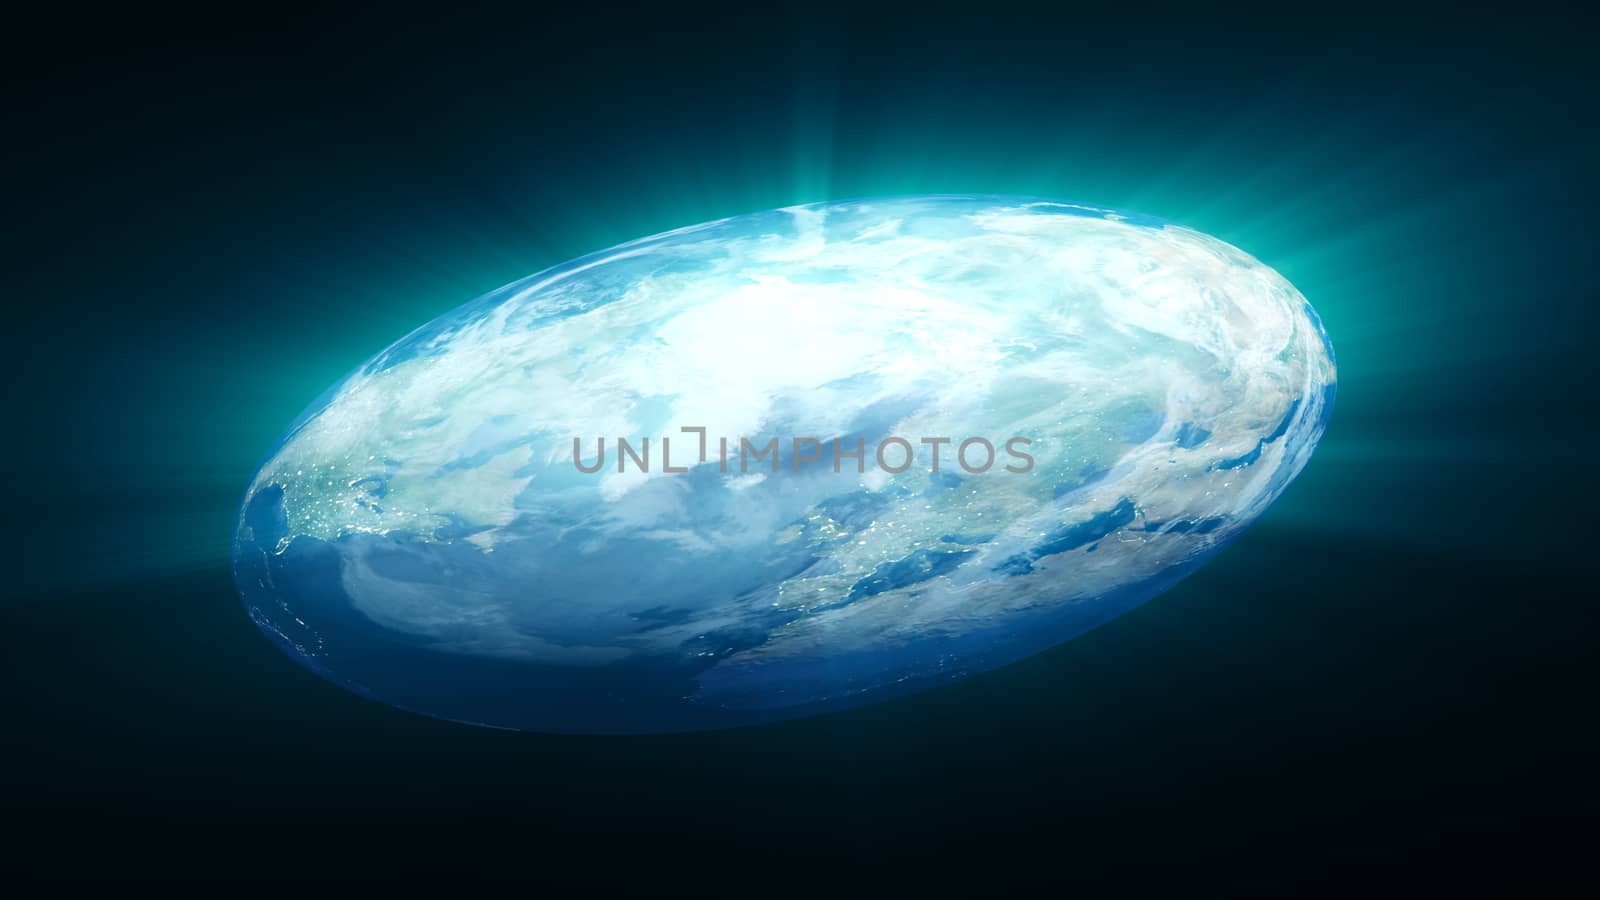 Flat Earth on black background. Digital illustration. 3d rendering